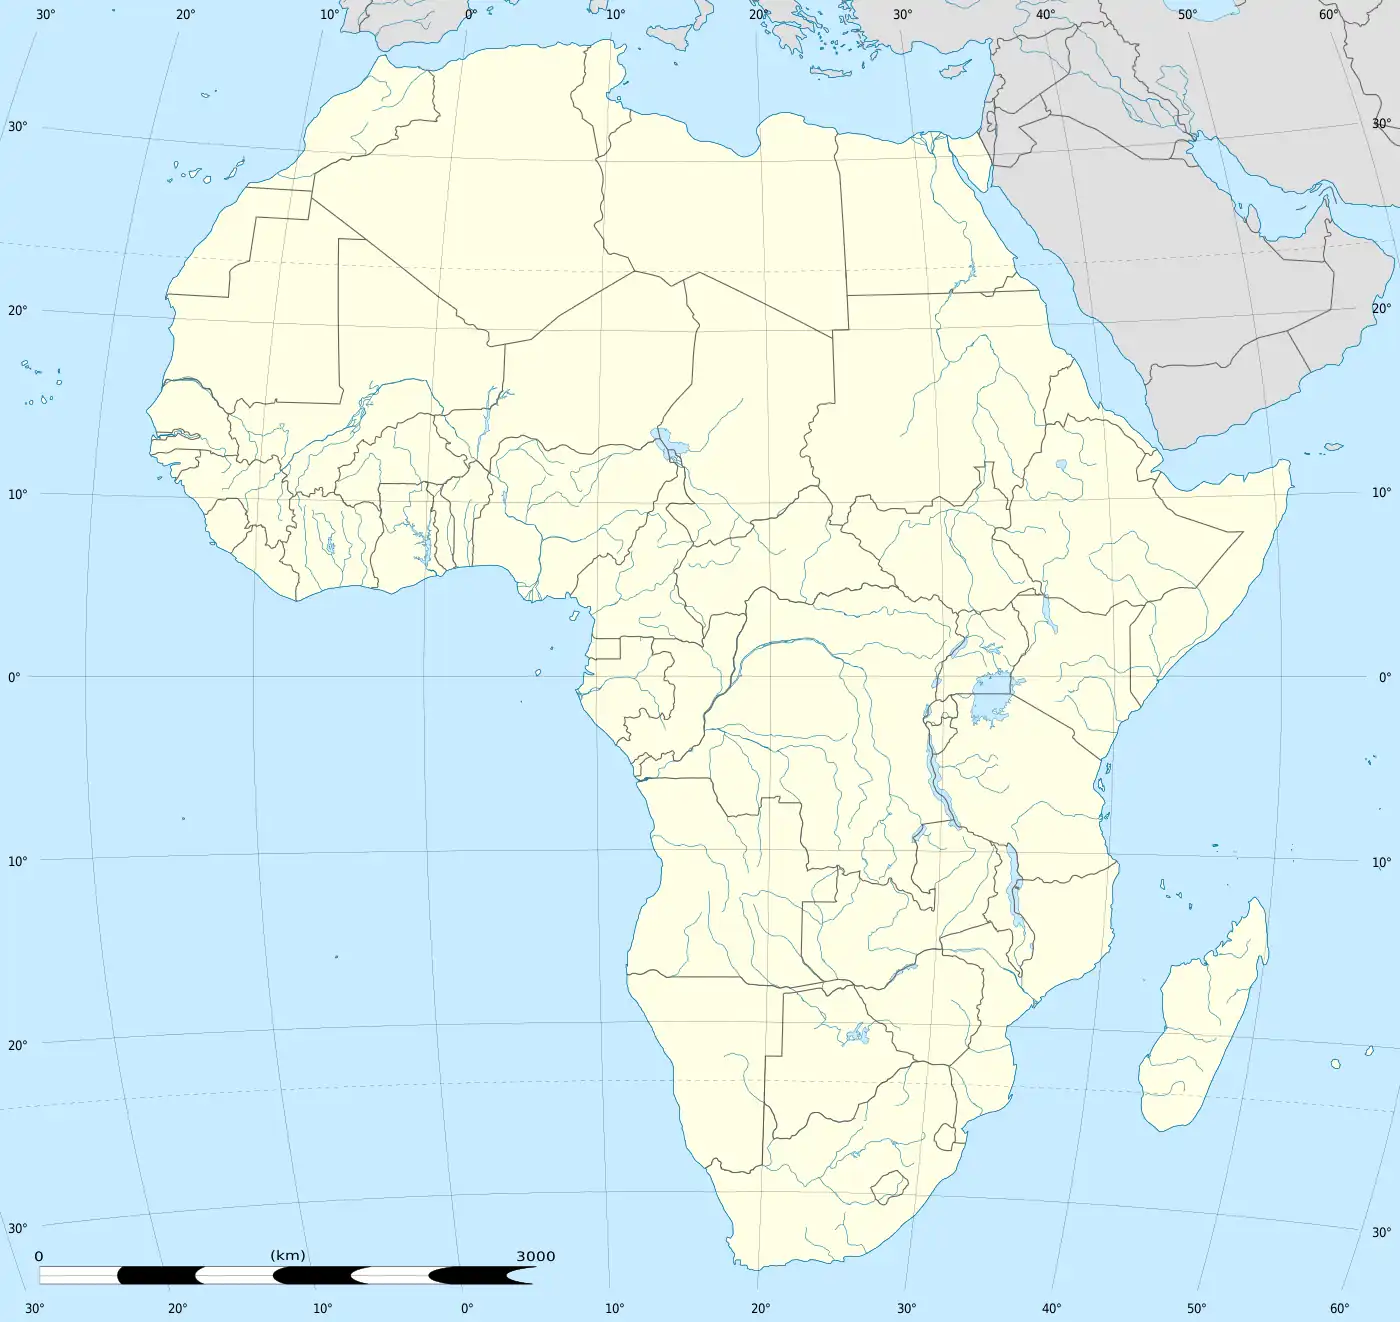 Langebaan is located in Africa